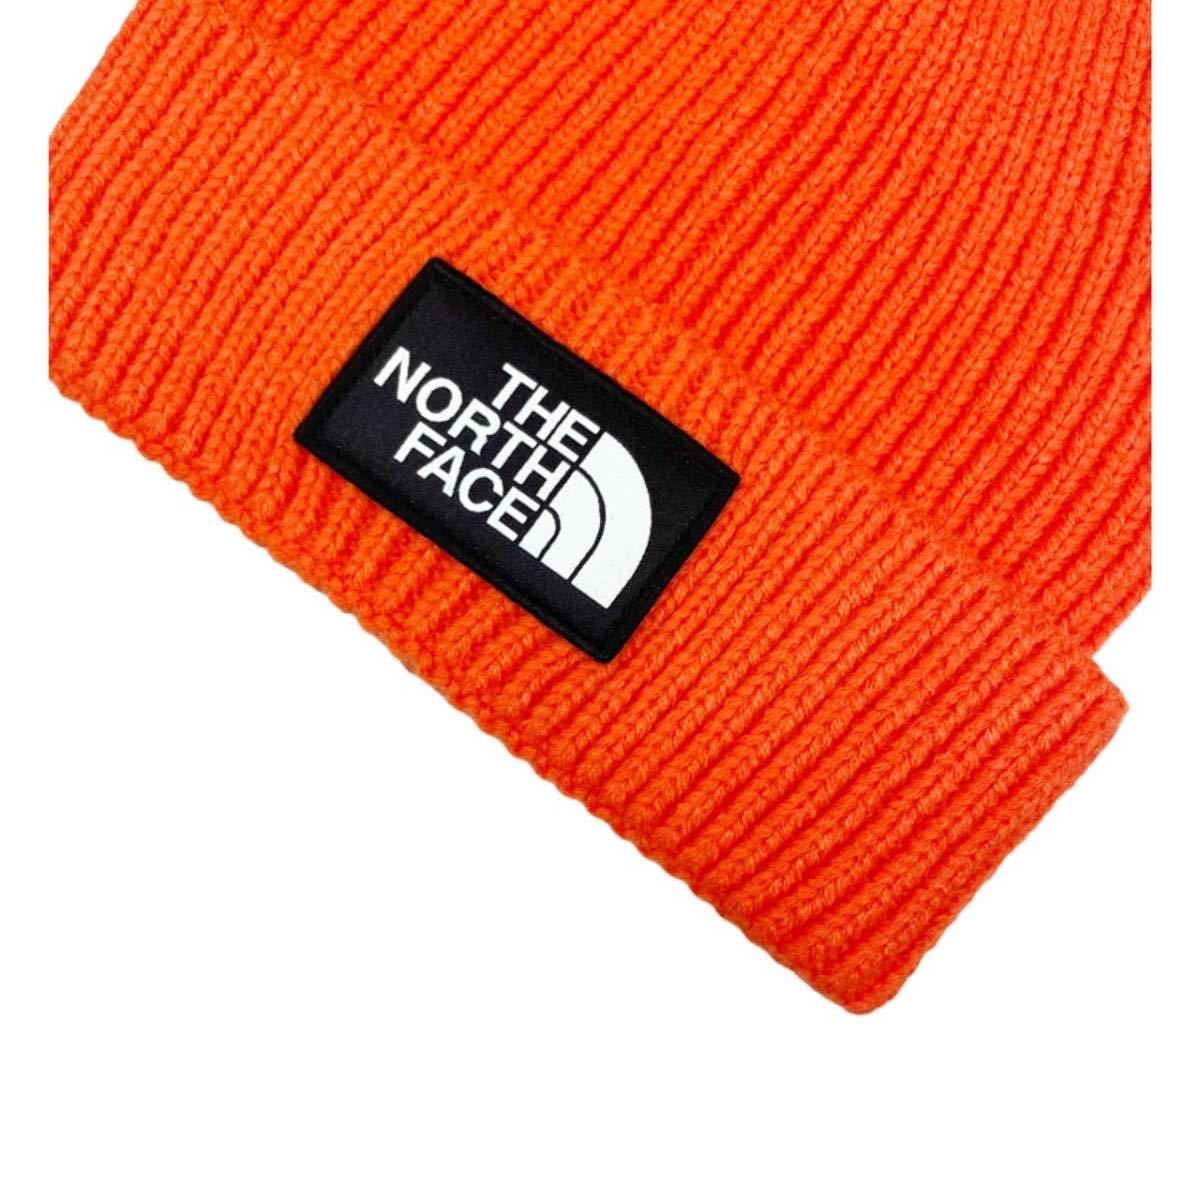 ザ ノースフェイス ビーニー ニット帽 帽子 メンズ レディース NF0A3FJX ボックスロゴ オレンジ THE NORTH FACE LOGO BOX CUF BEANIE 新品